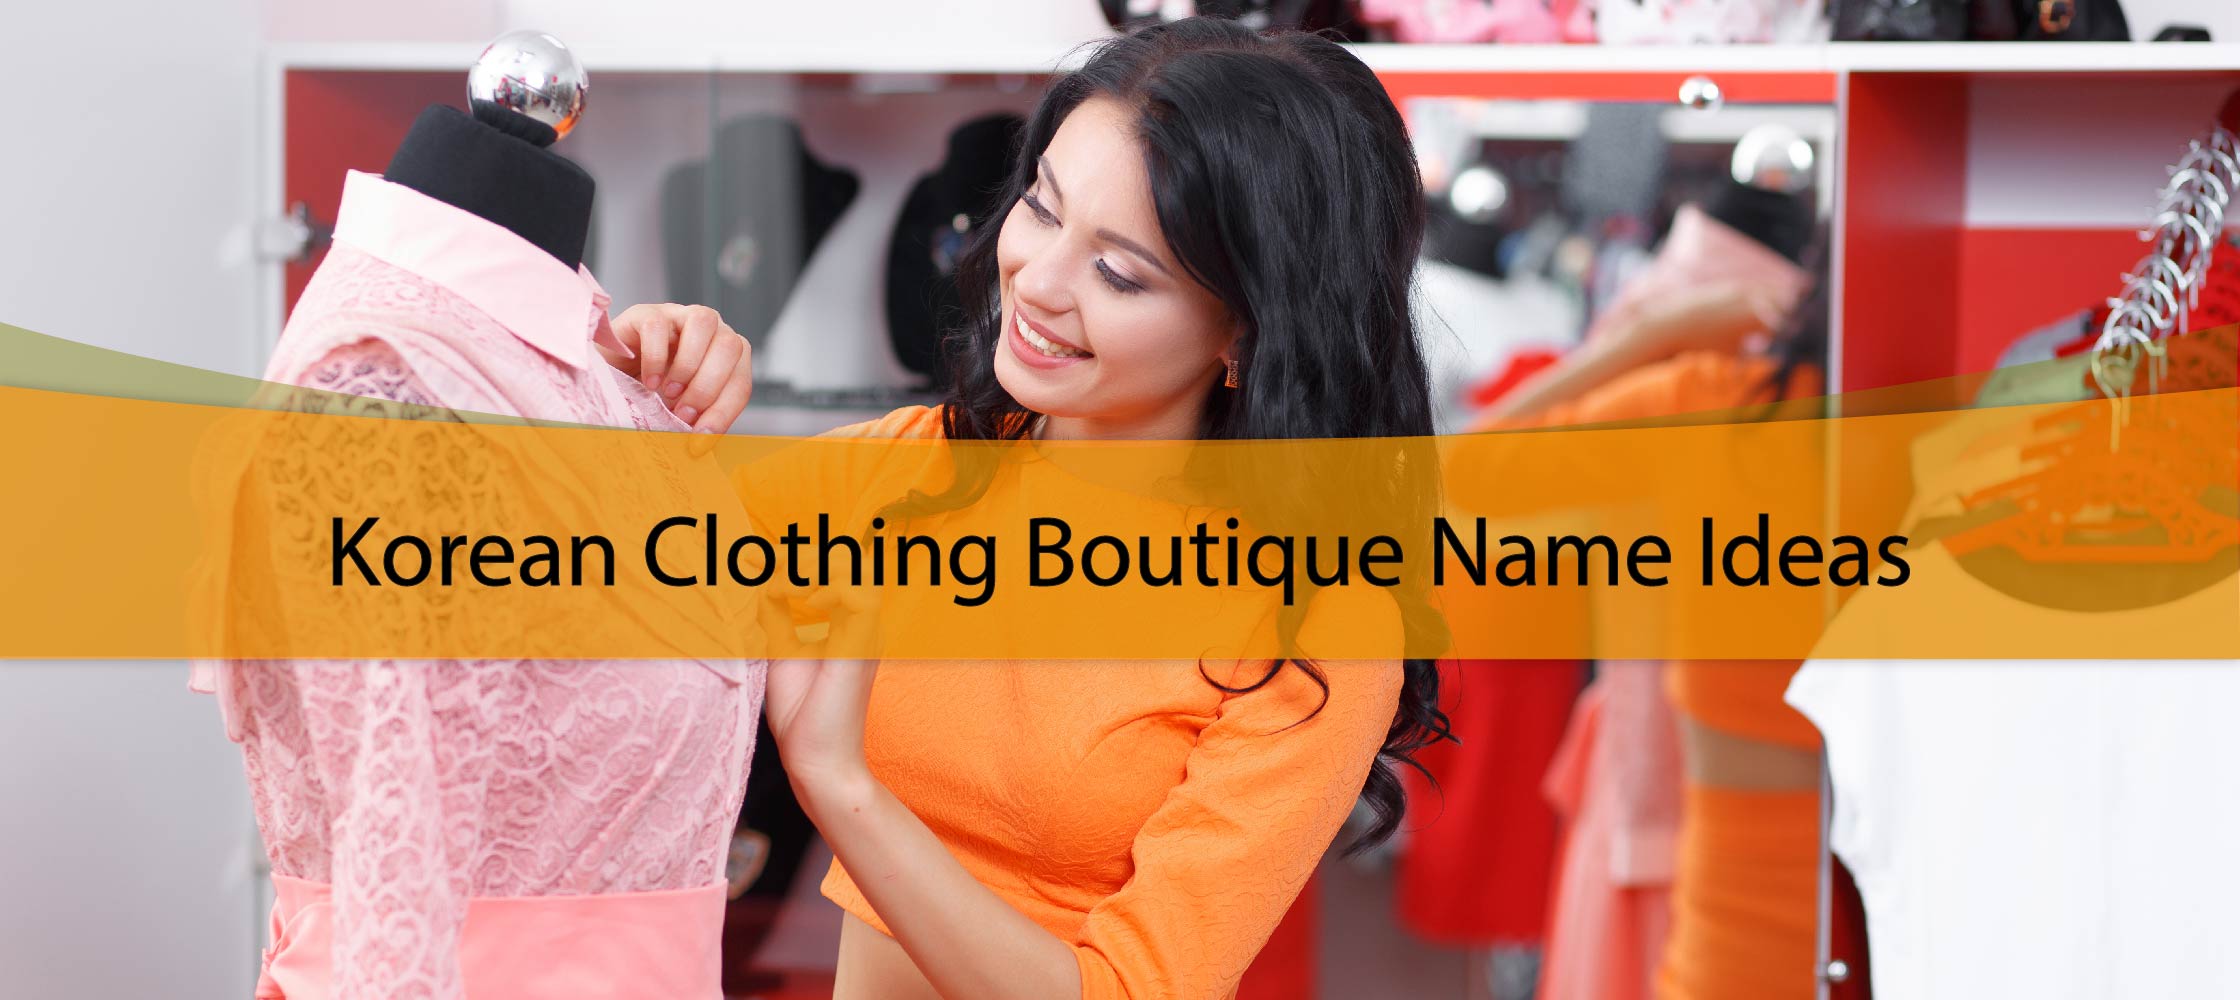 Korean Clothing Boutique Name Ideas